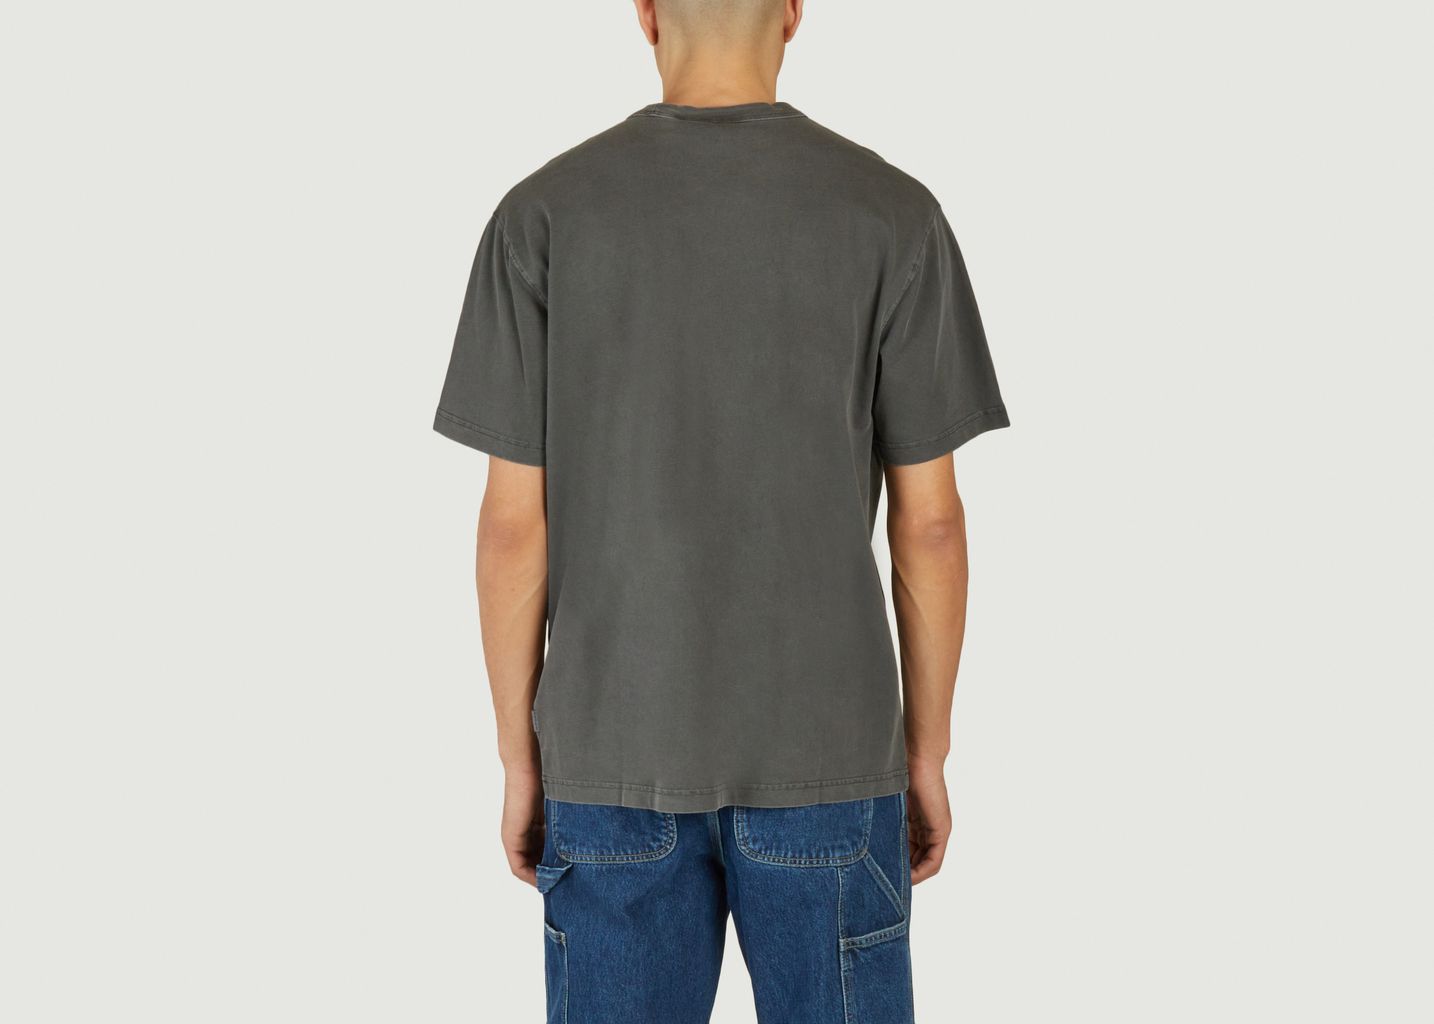 Taos T-Shirt - Carhartt WIP